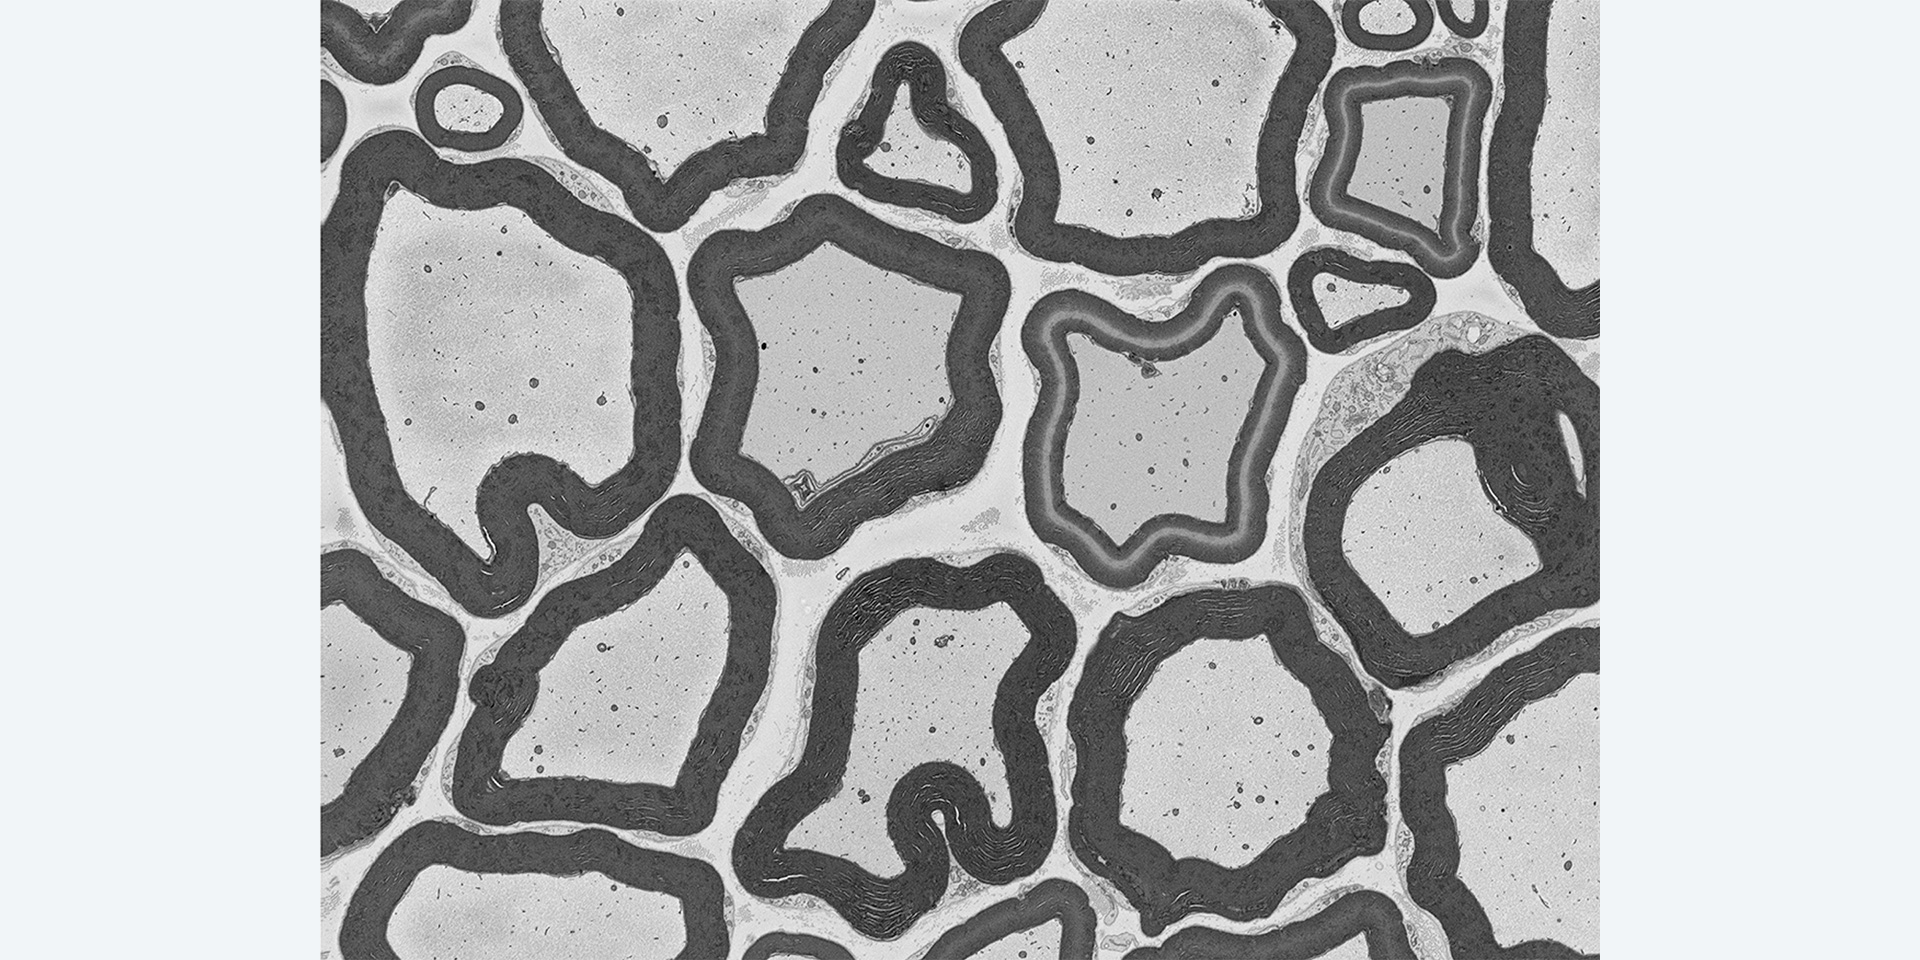 Haz de axones de rata captado en SEM en modo alto vacío con Focal Charge Compensation. Los efectos de carga se mitigan. Imagen cortesía del National Center for Microscopy and Imaging Research (NCMIR), Universidad de California San Diego, EE. UU.